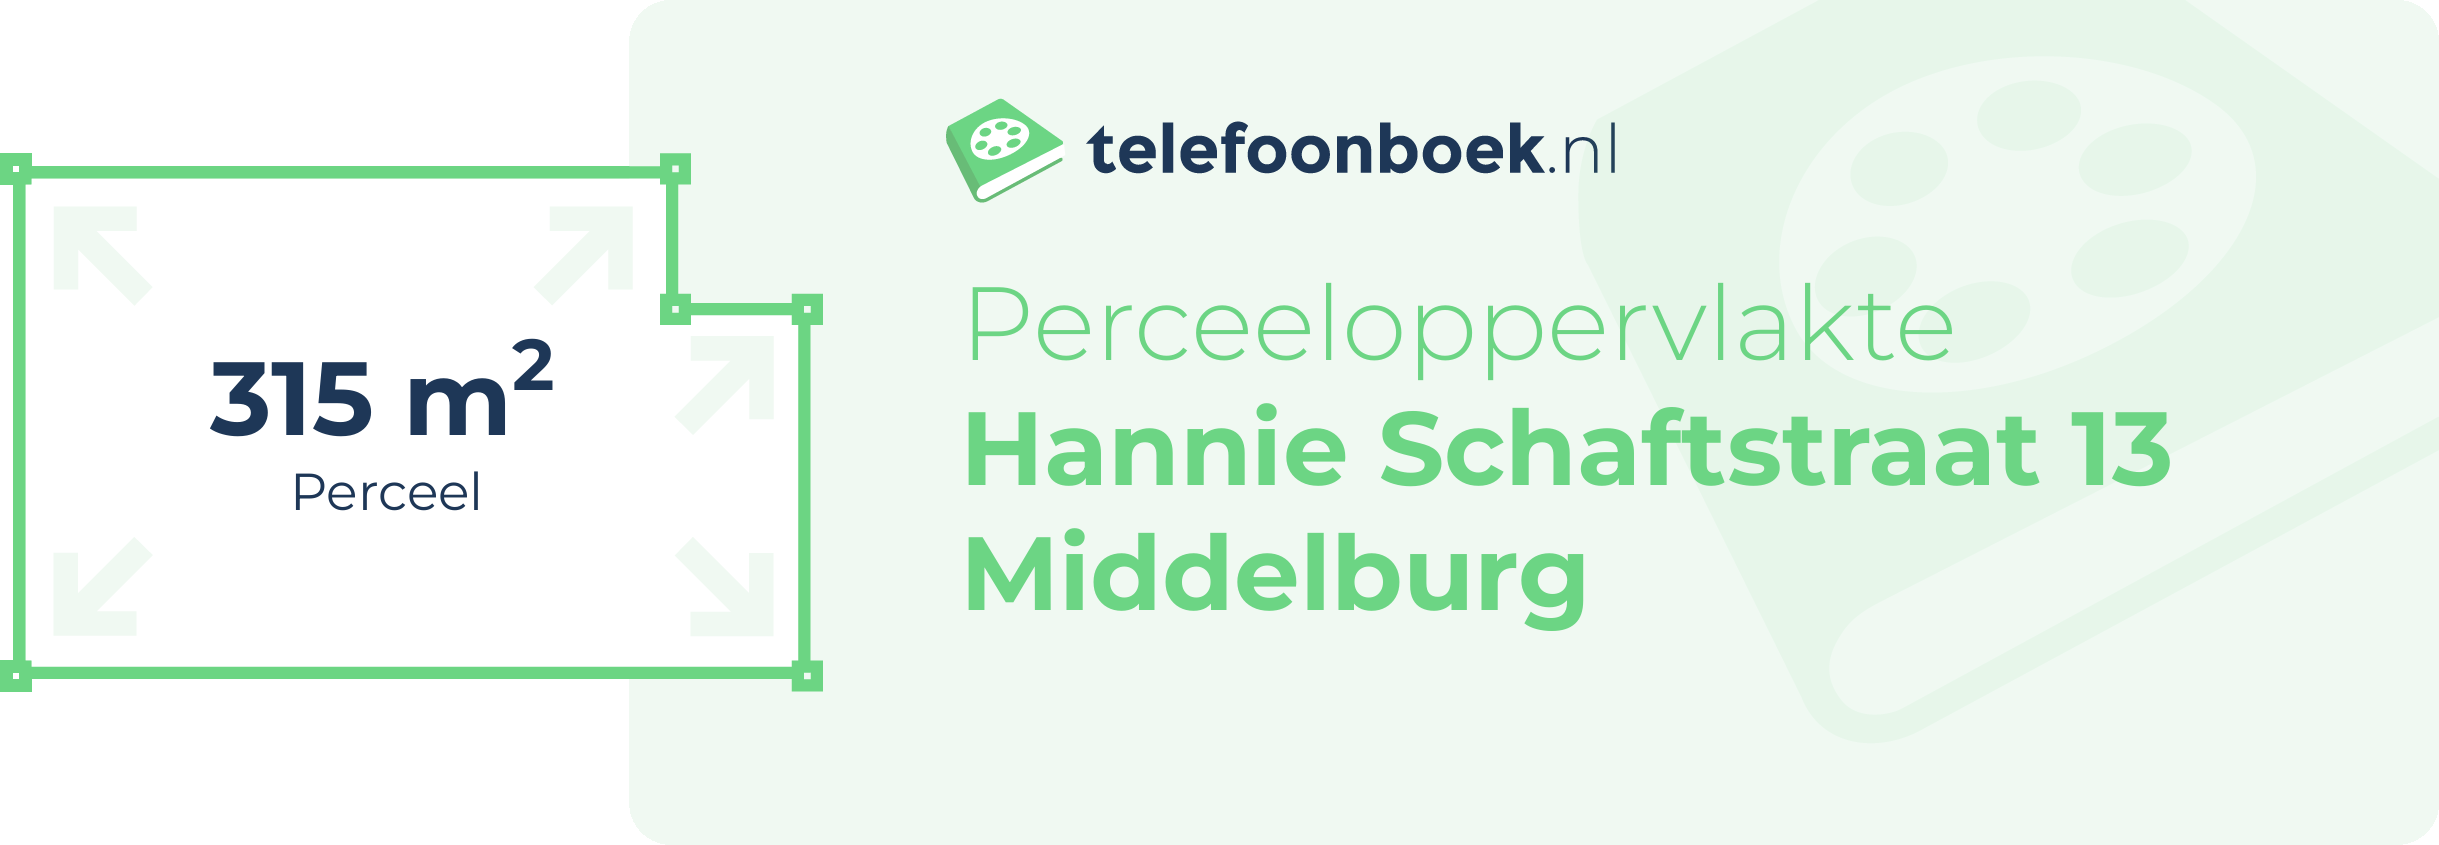 Perceeloppervlakte Hannie Schaftstraat 13 Middelburg